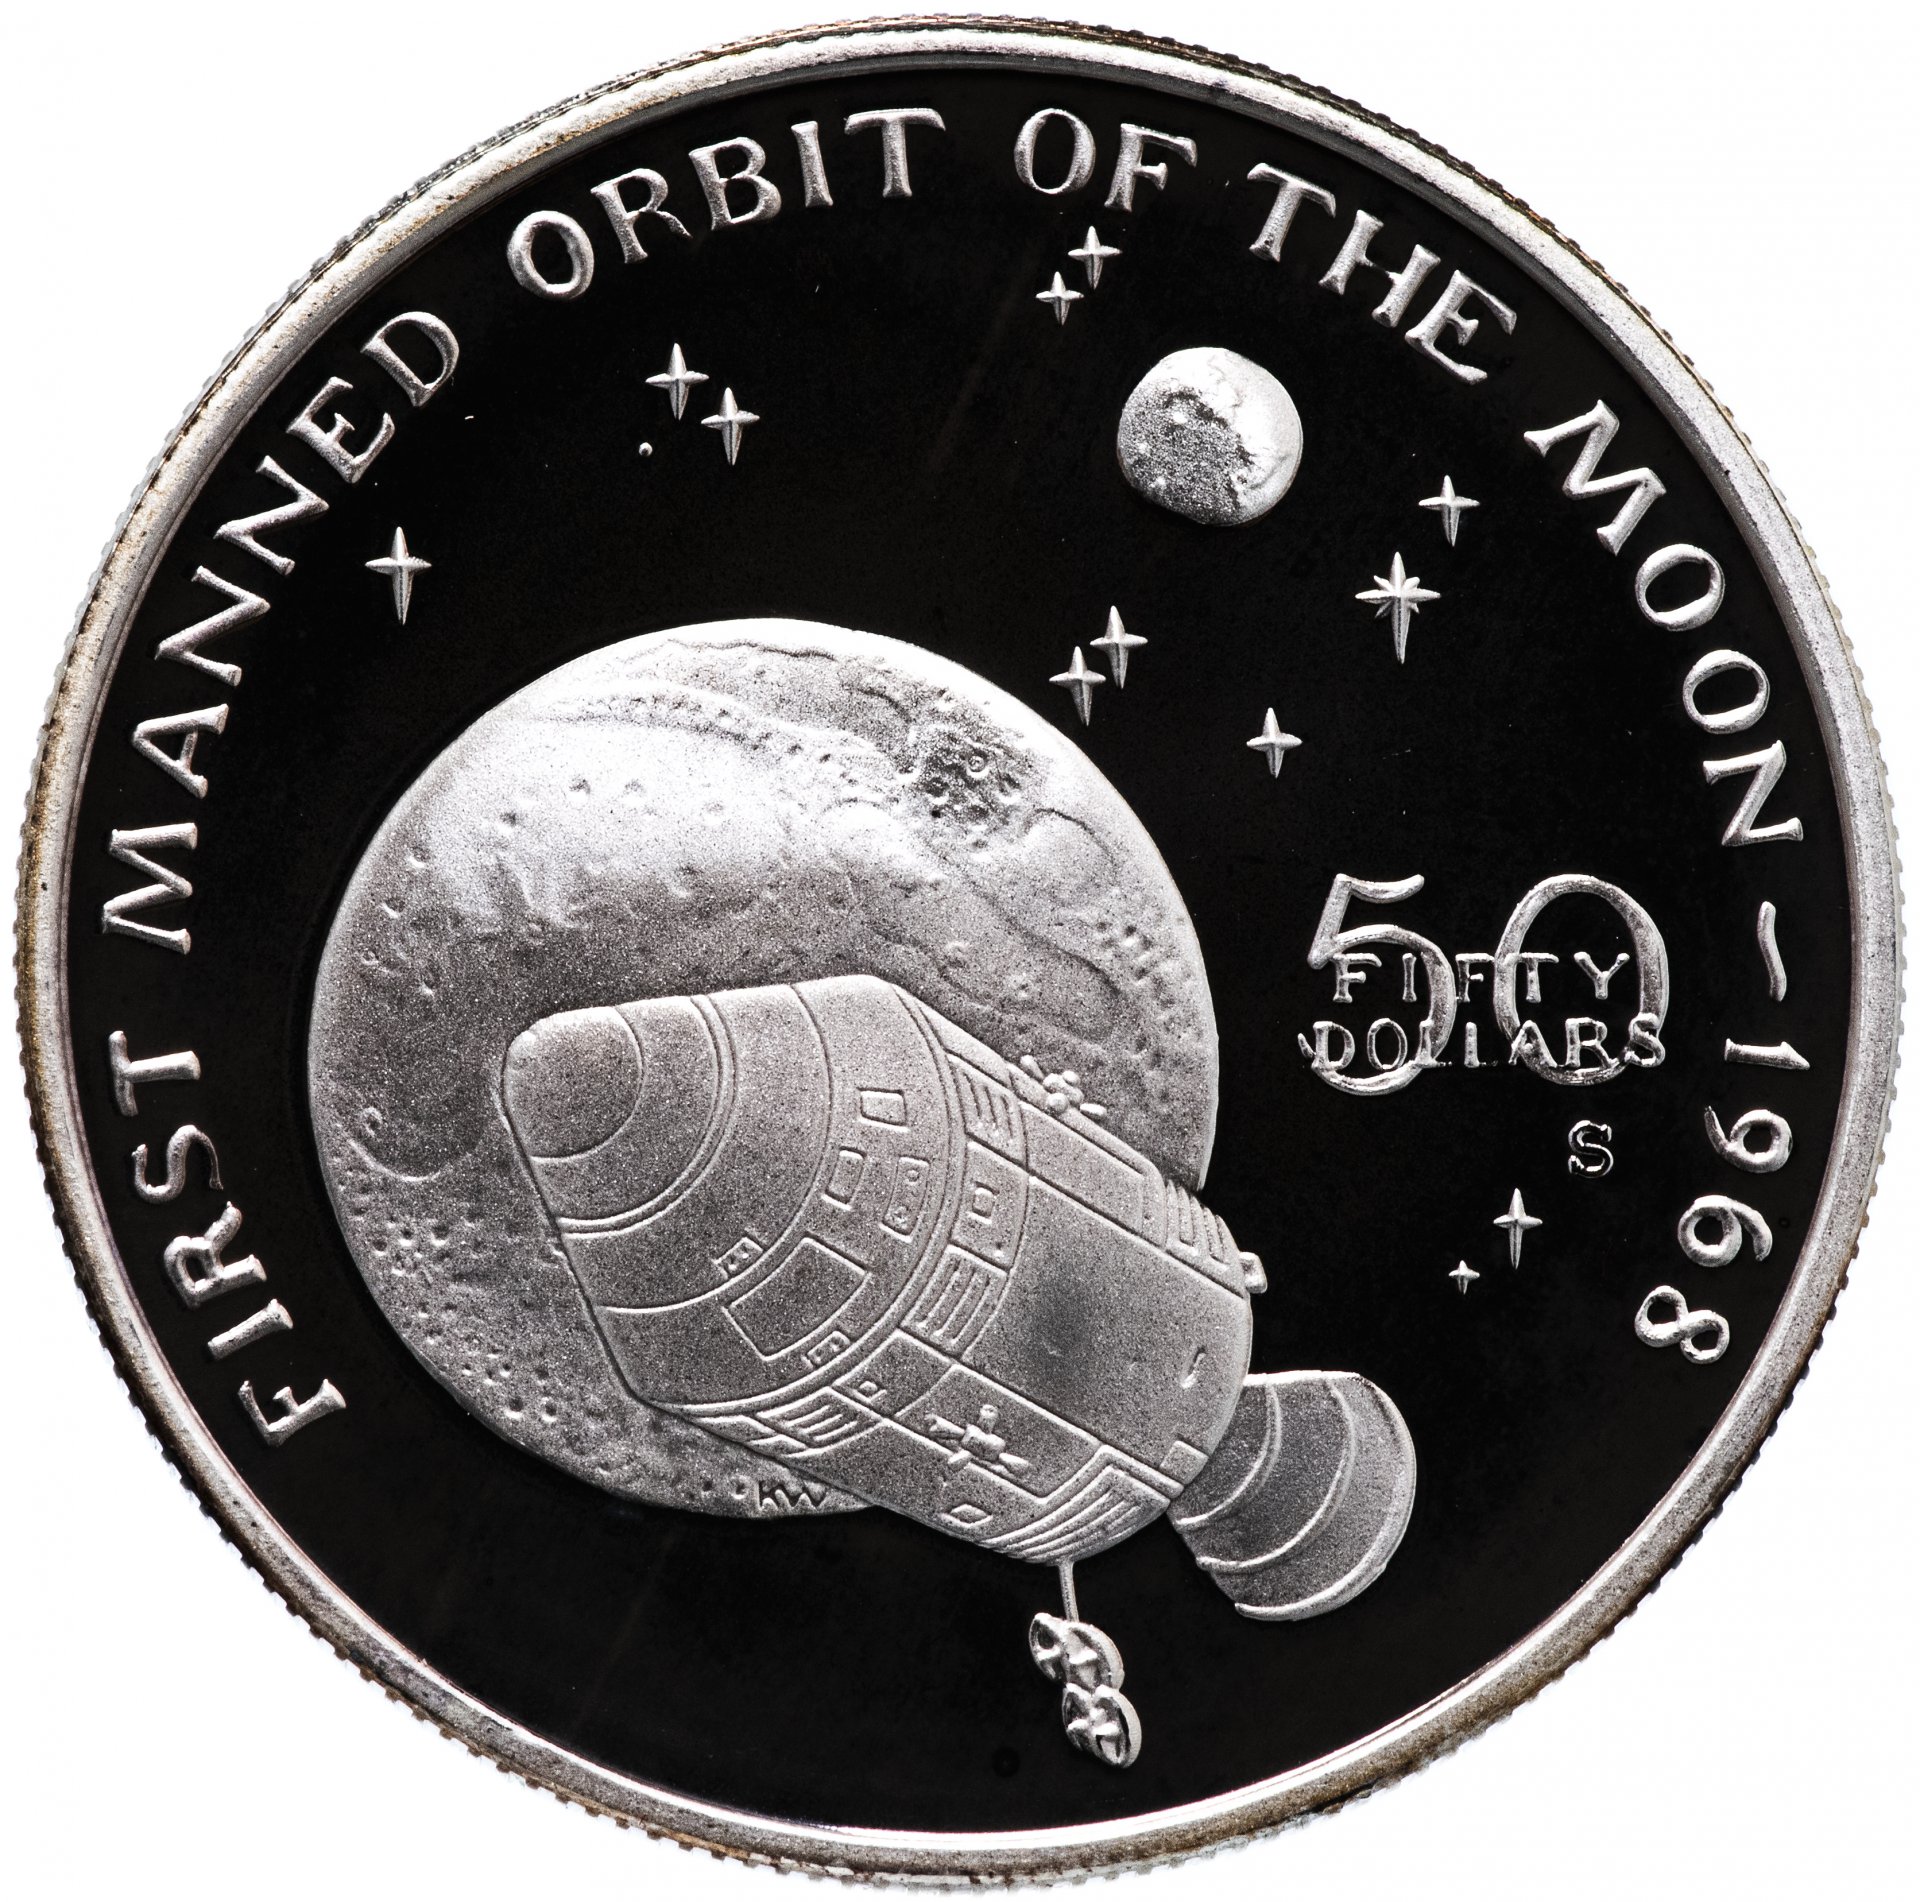 Монета космос Маршалловы. 1 Доллар монета Маршал овы острова лайка космос. Монета электрон первые космические. Стоимость Луны.